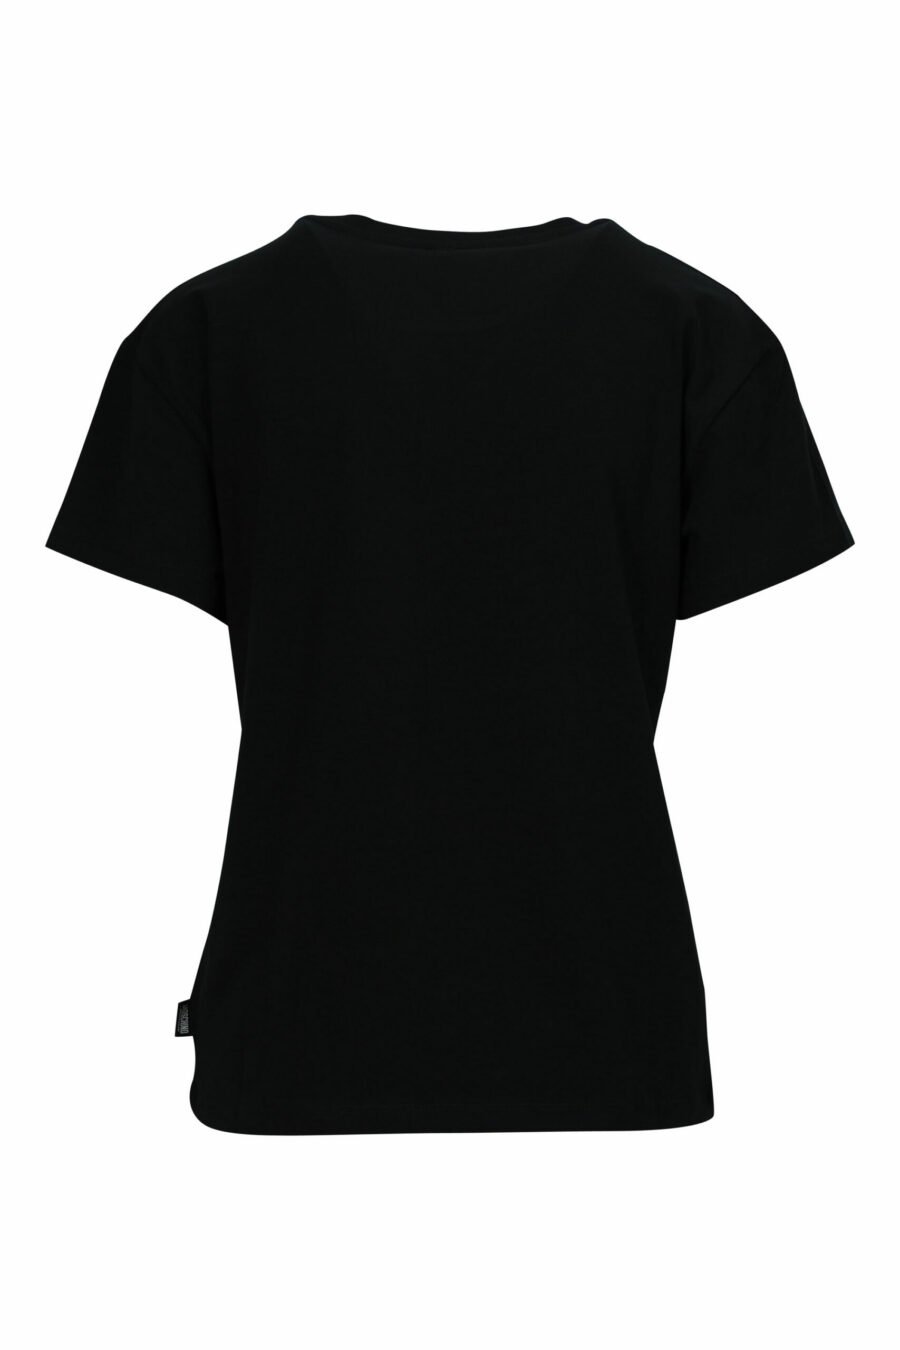 T-shirt preta de tamanho grande com emblema do urso "underbear" - 667113697666 1 scaled